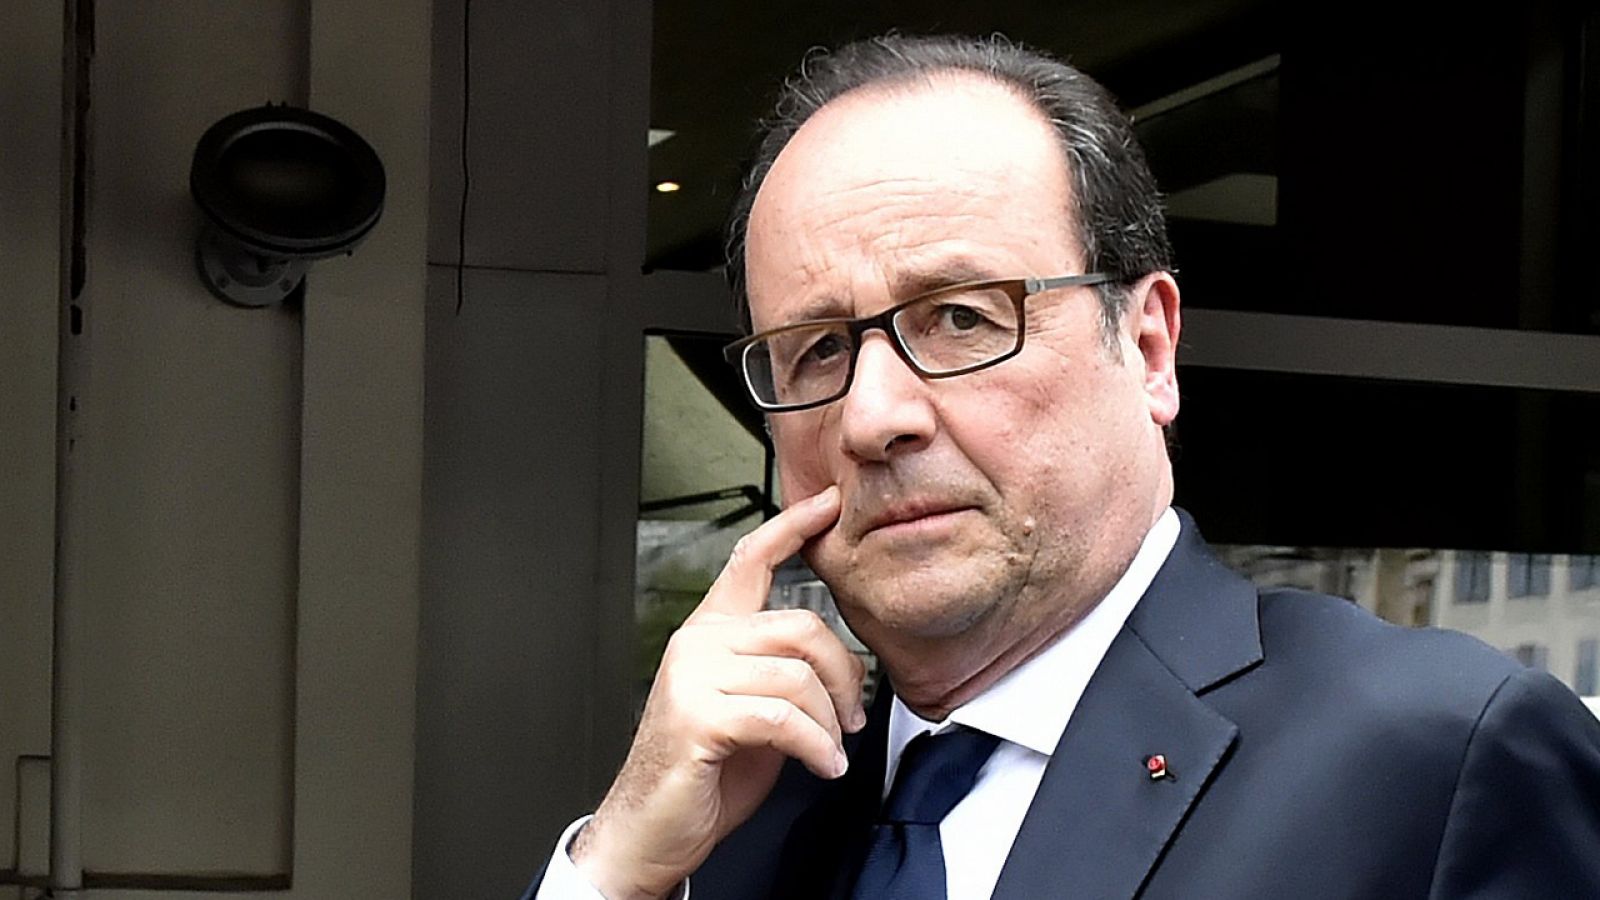 El presidente saliente de Francia François Hollande despues de votar